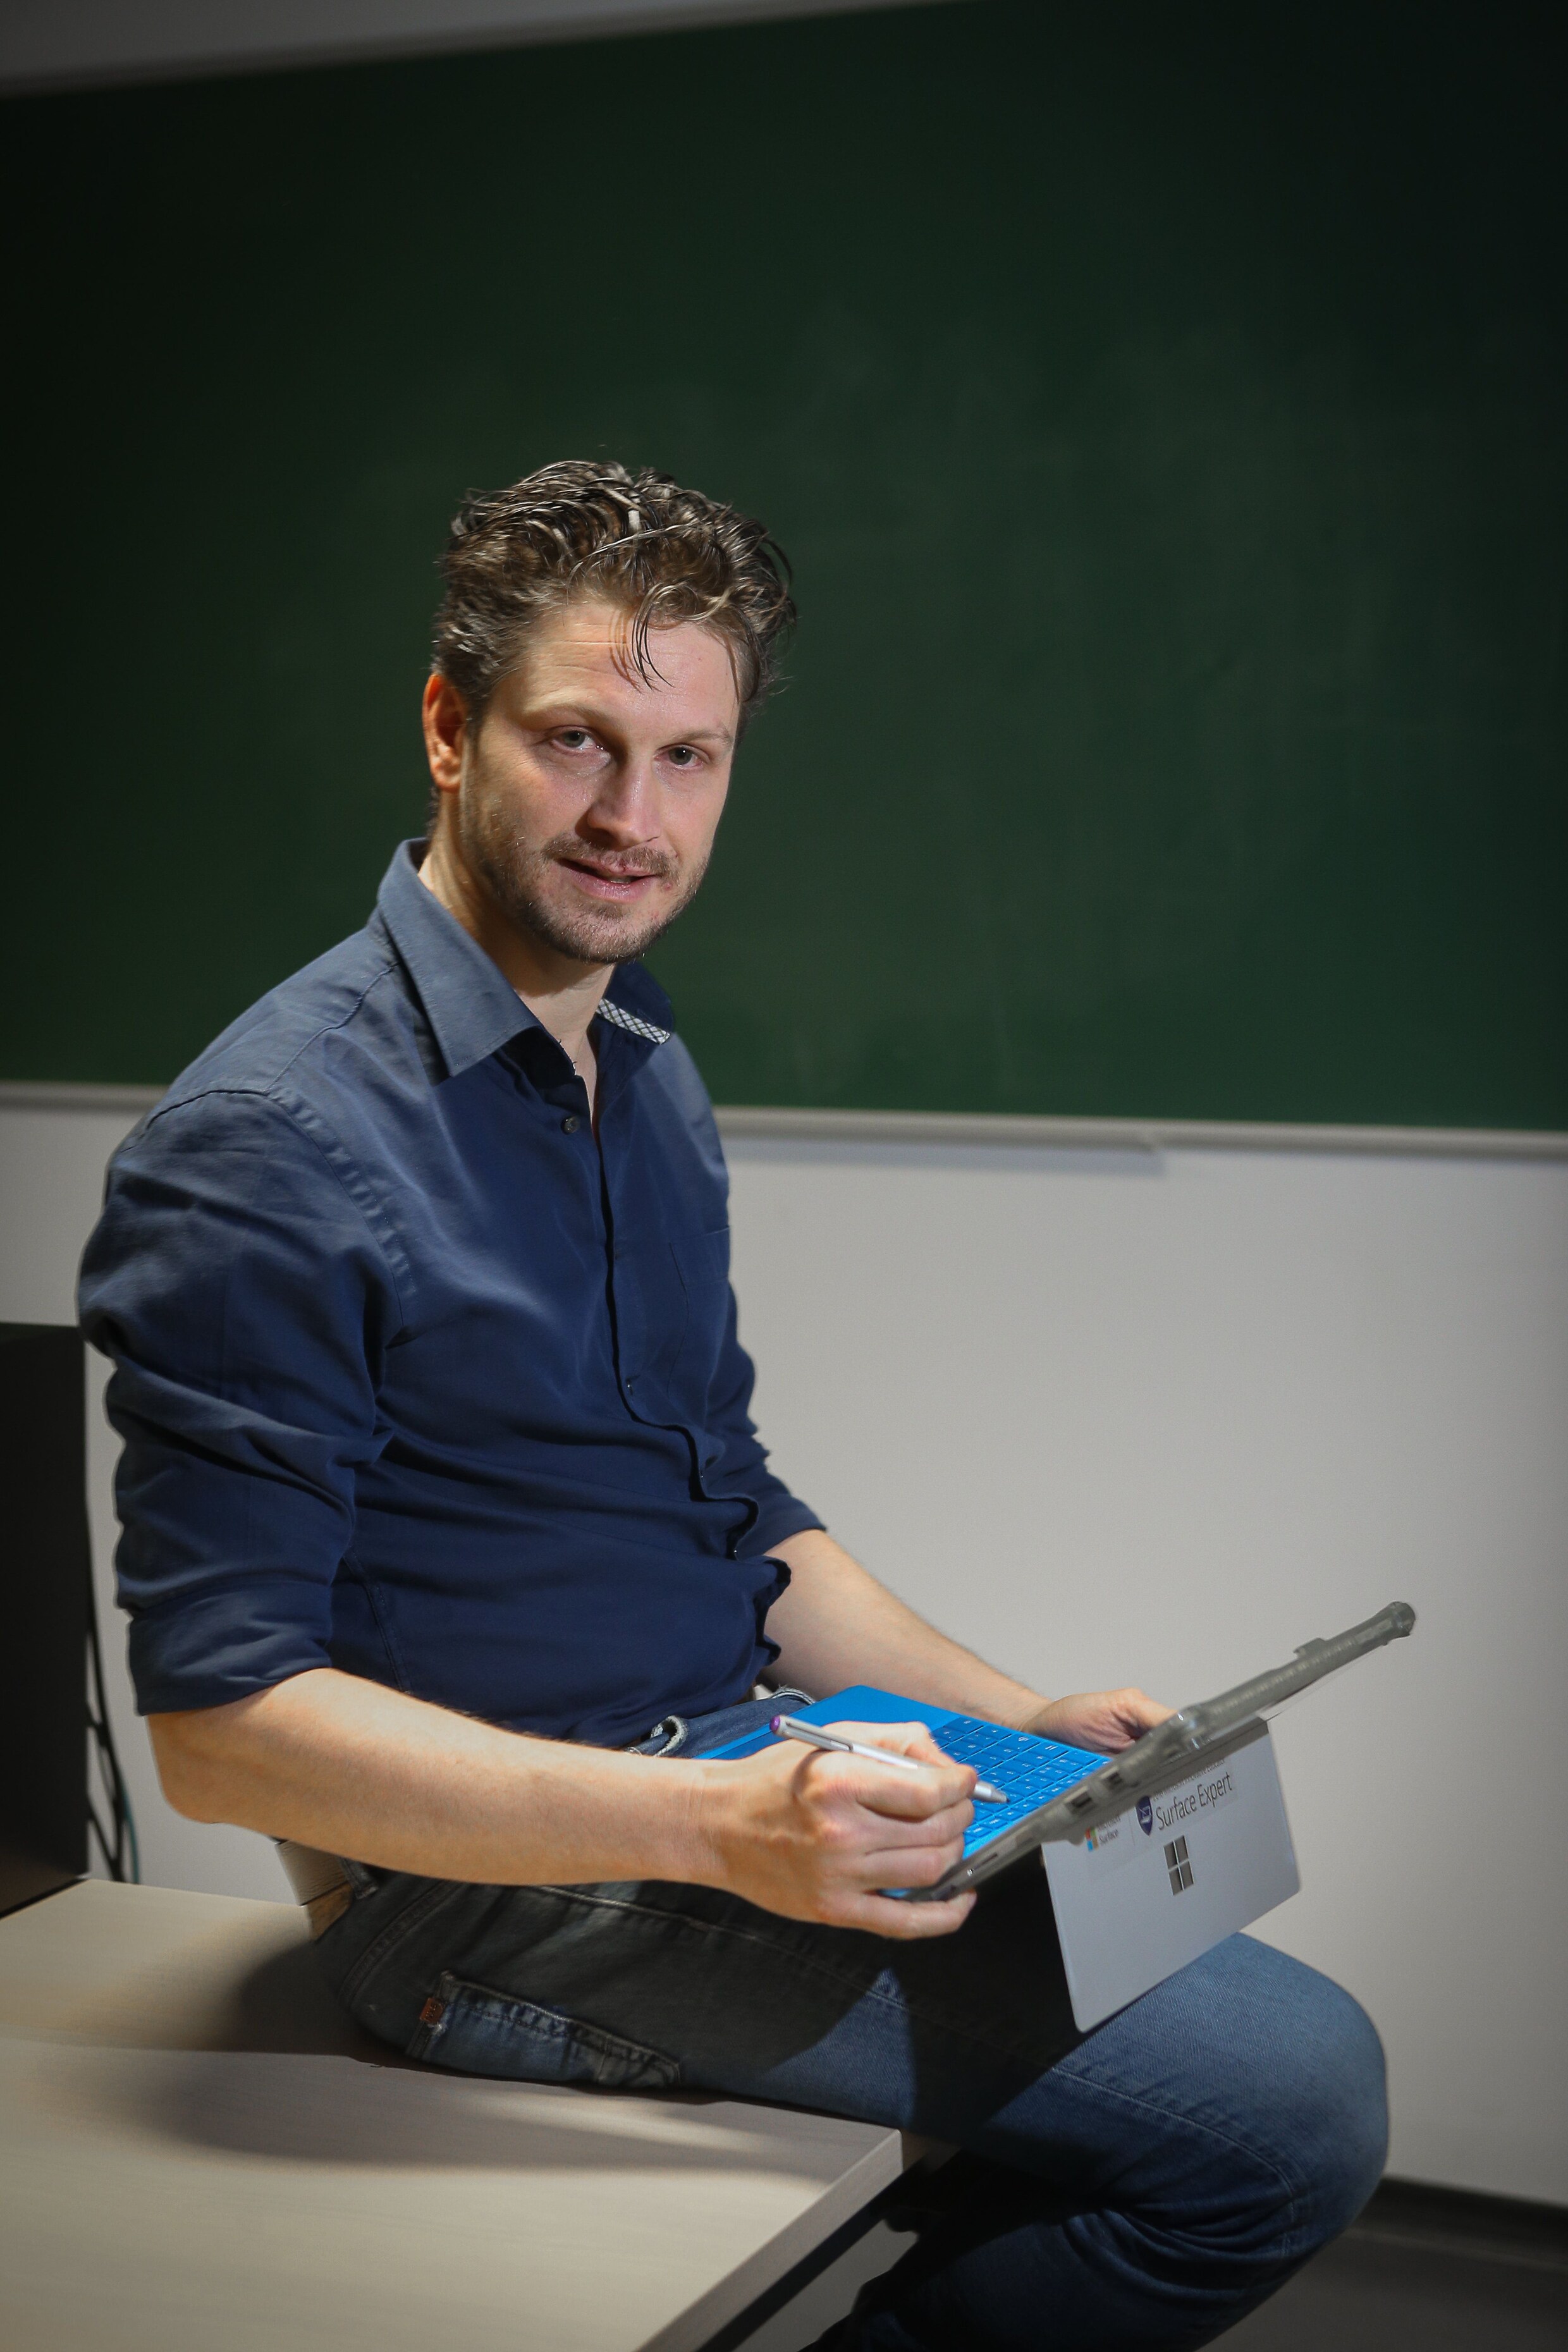 Limburger Koen Timmers (38) dan toch niet 'beste leerkracht ter wereld'